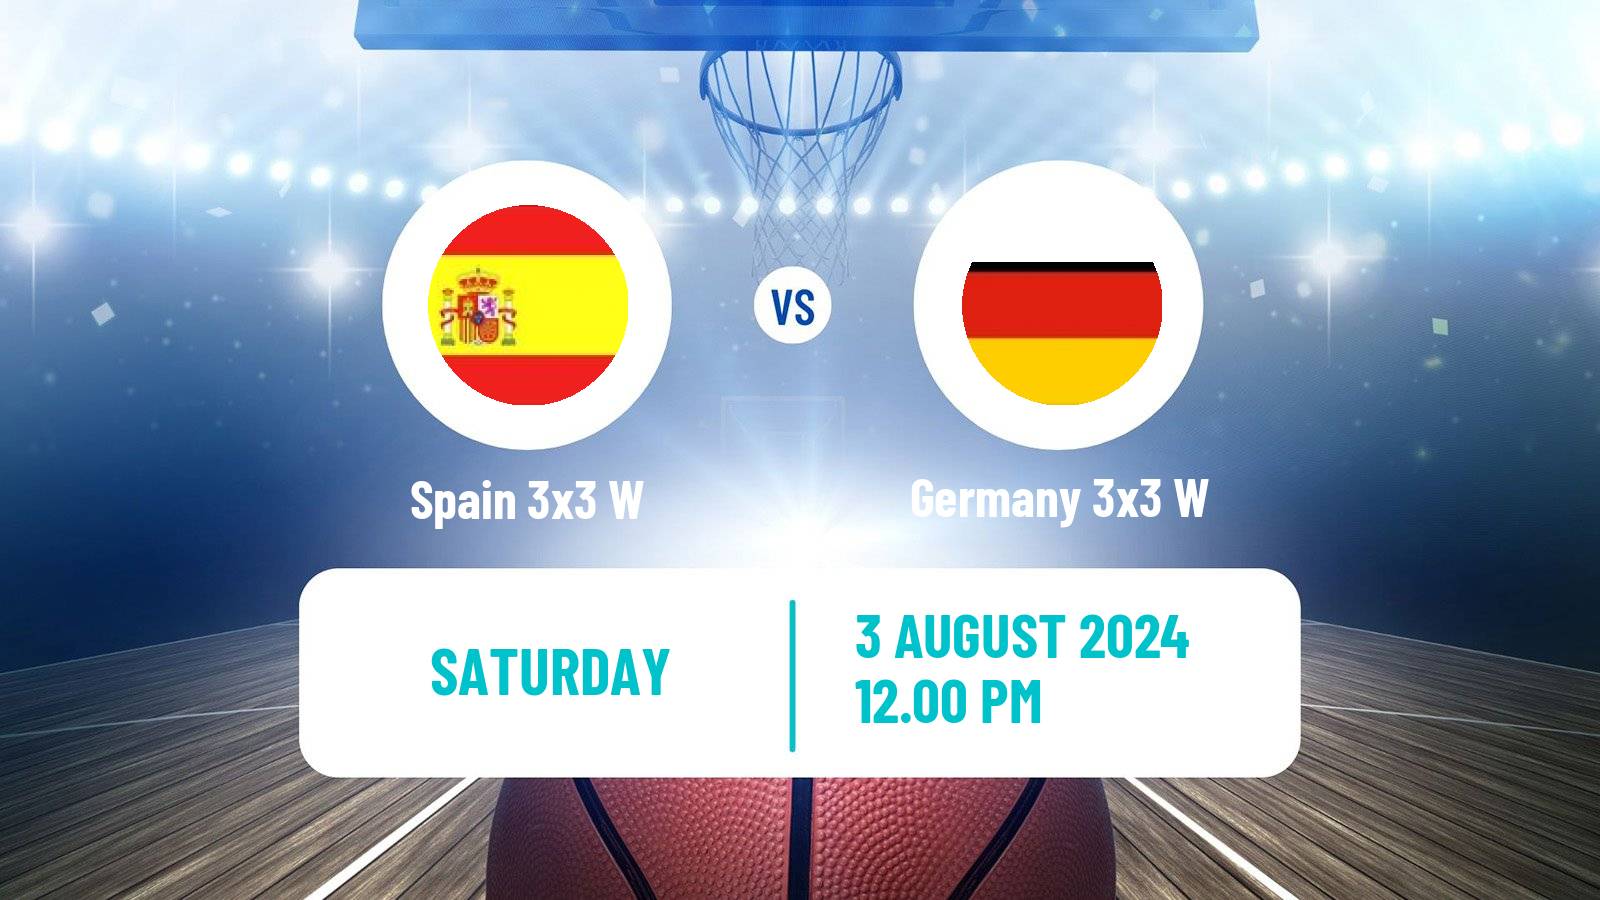 Basketball Olympic Games Basketball 3x3 Women Spain 3x3 W - Germany 3x3 W